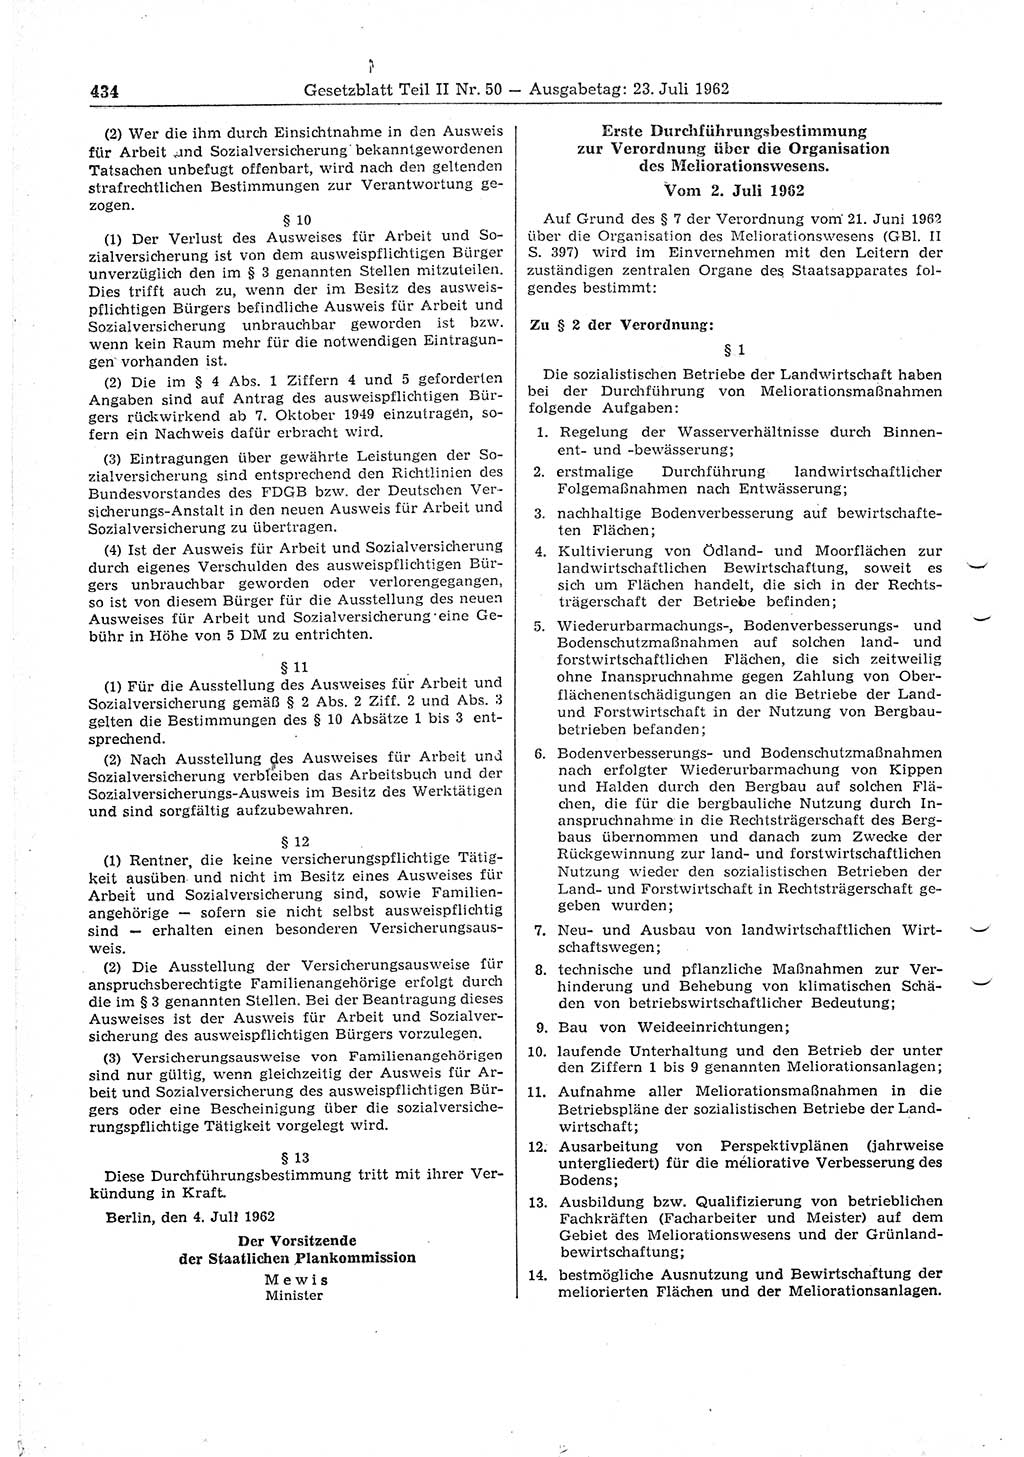 Gesetzblatt (GBl.) der Deutschen Demokratischen Republik (DDR) Teil â… â… 1962, Seite 434 (GBl. DDR â… â… 1962, S. 434)